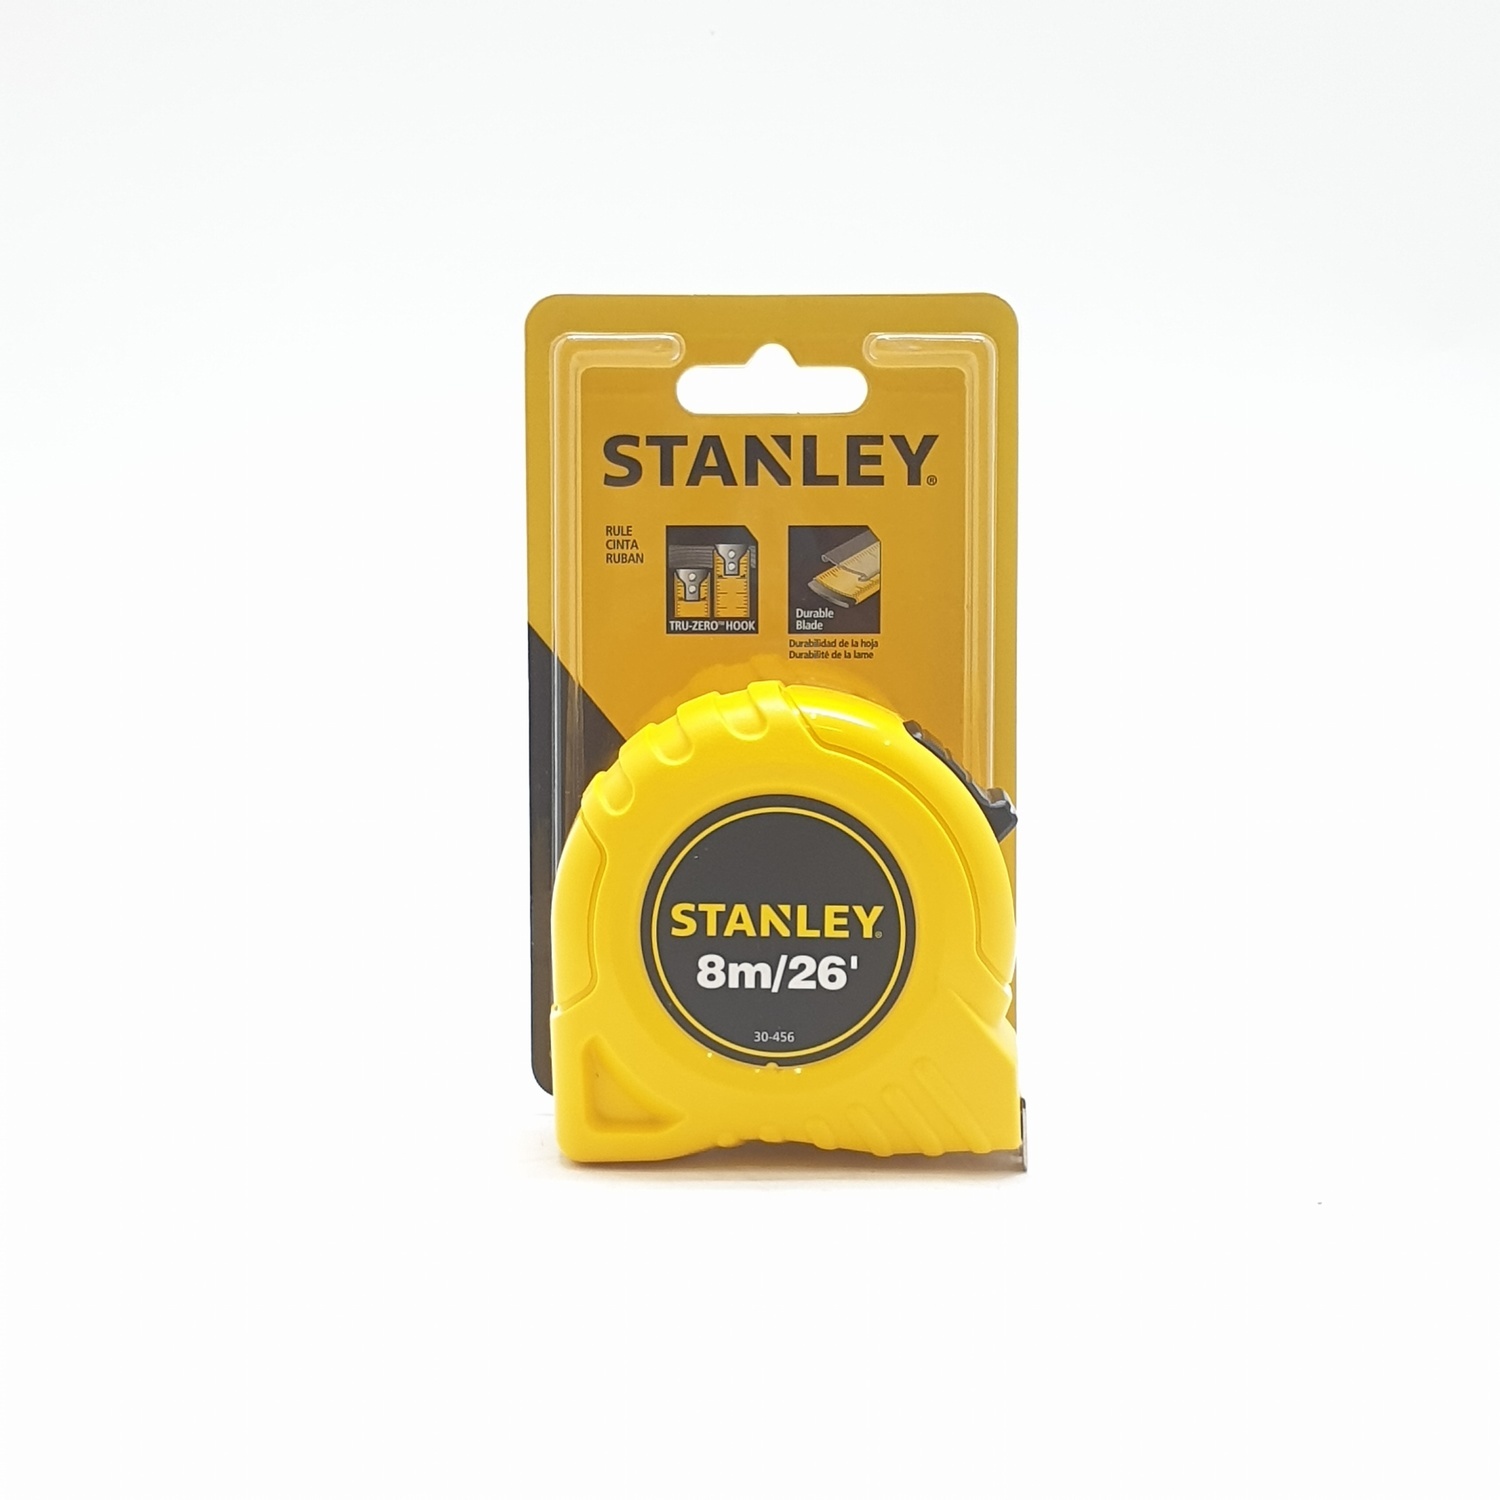 Stanley Tape Measures Global